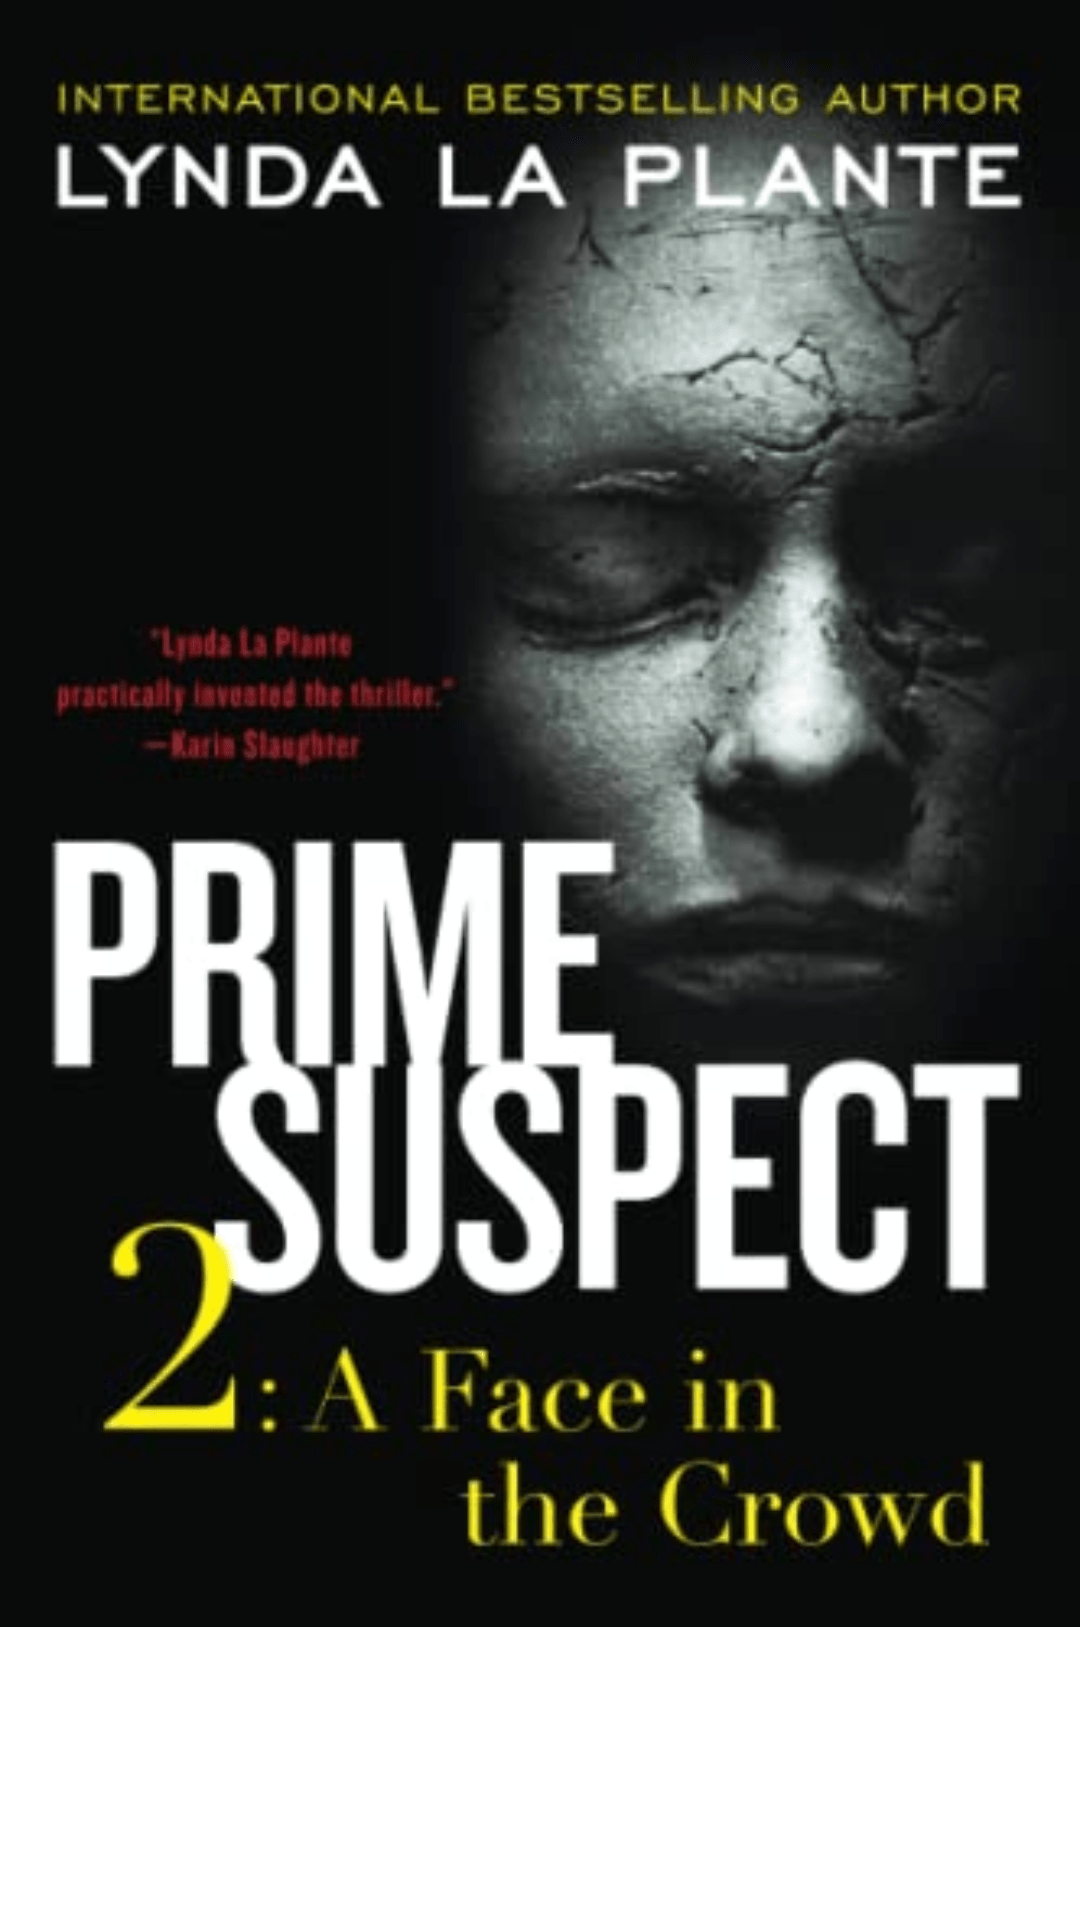 Prime Suspect by Lynda La Plante